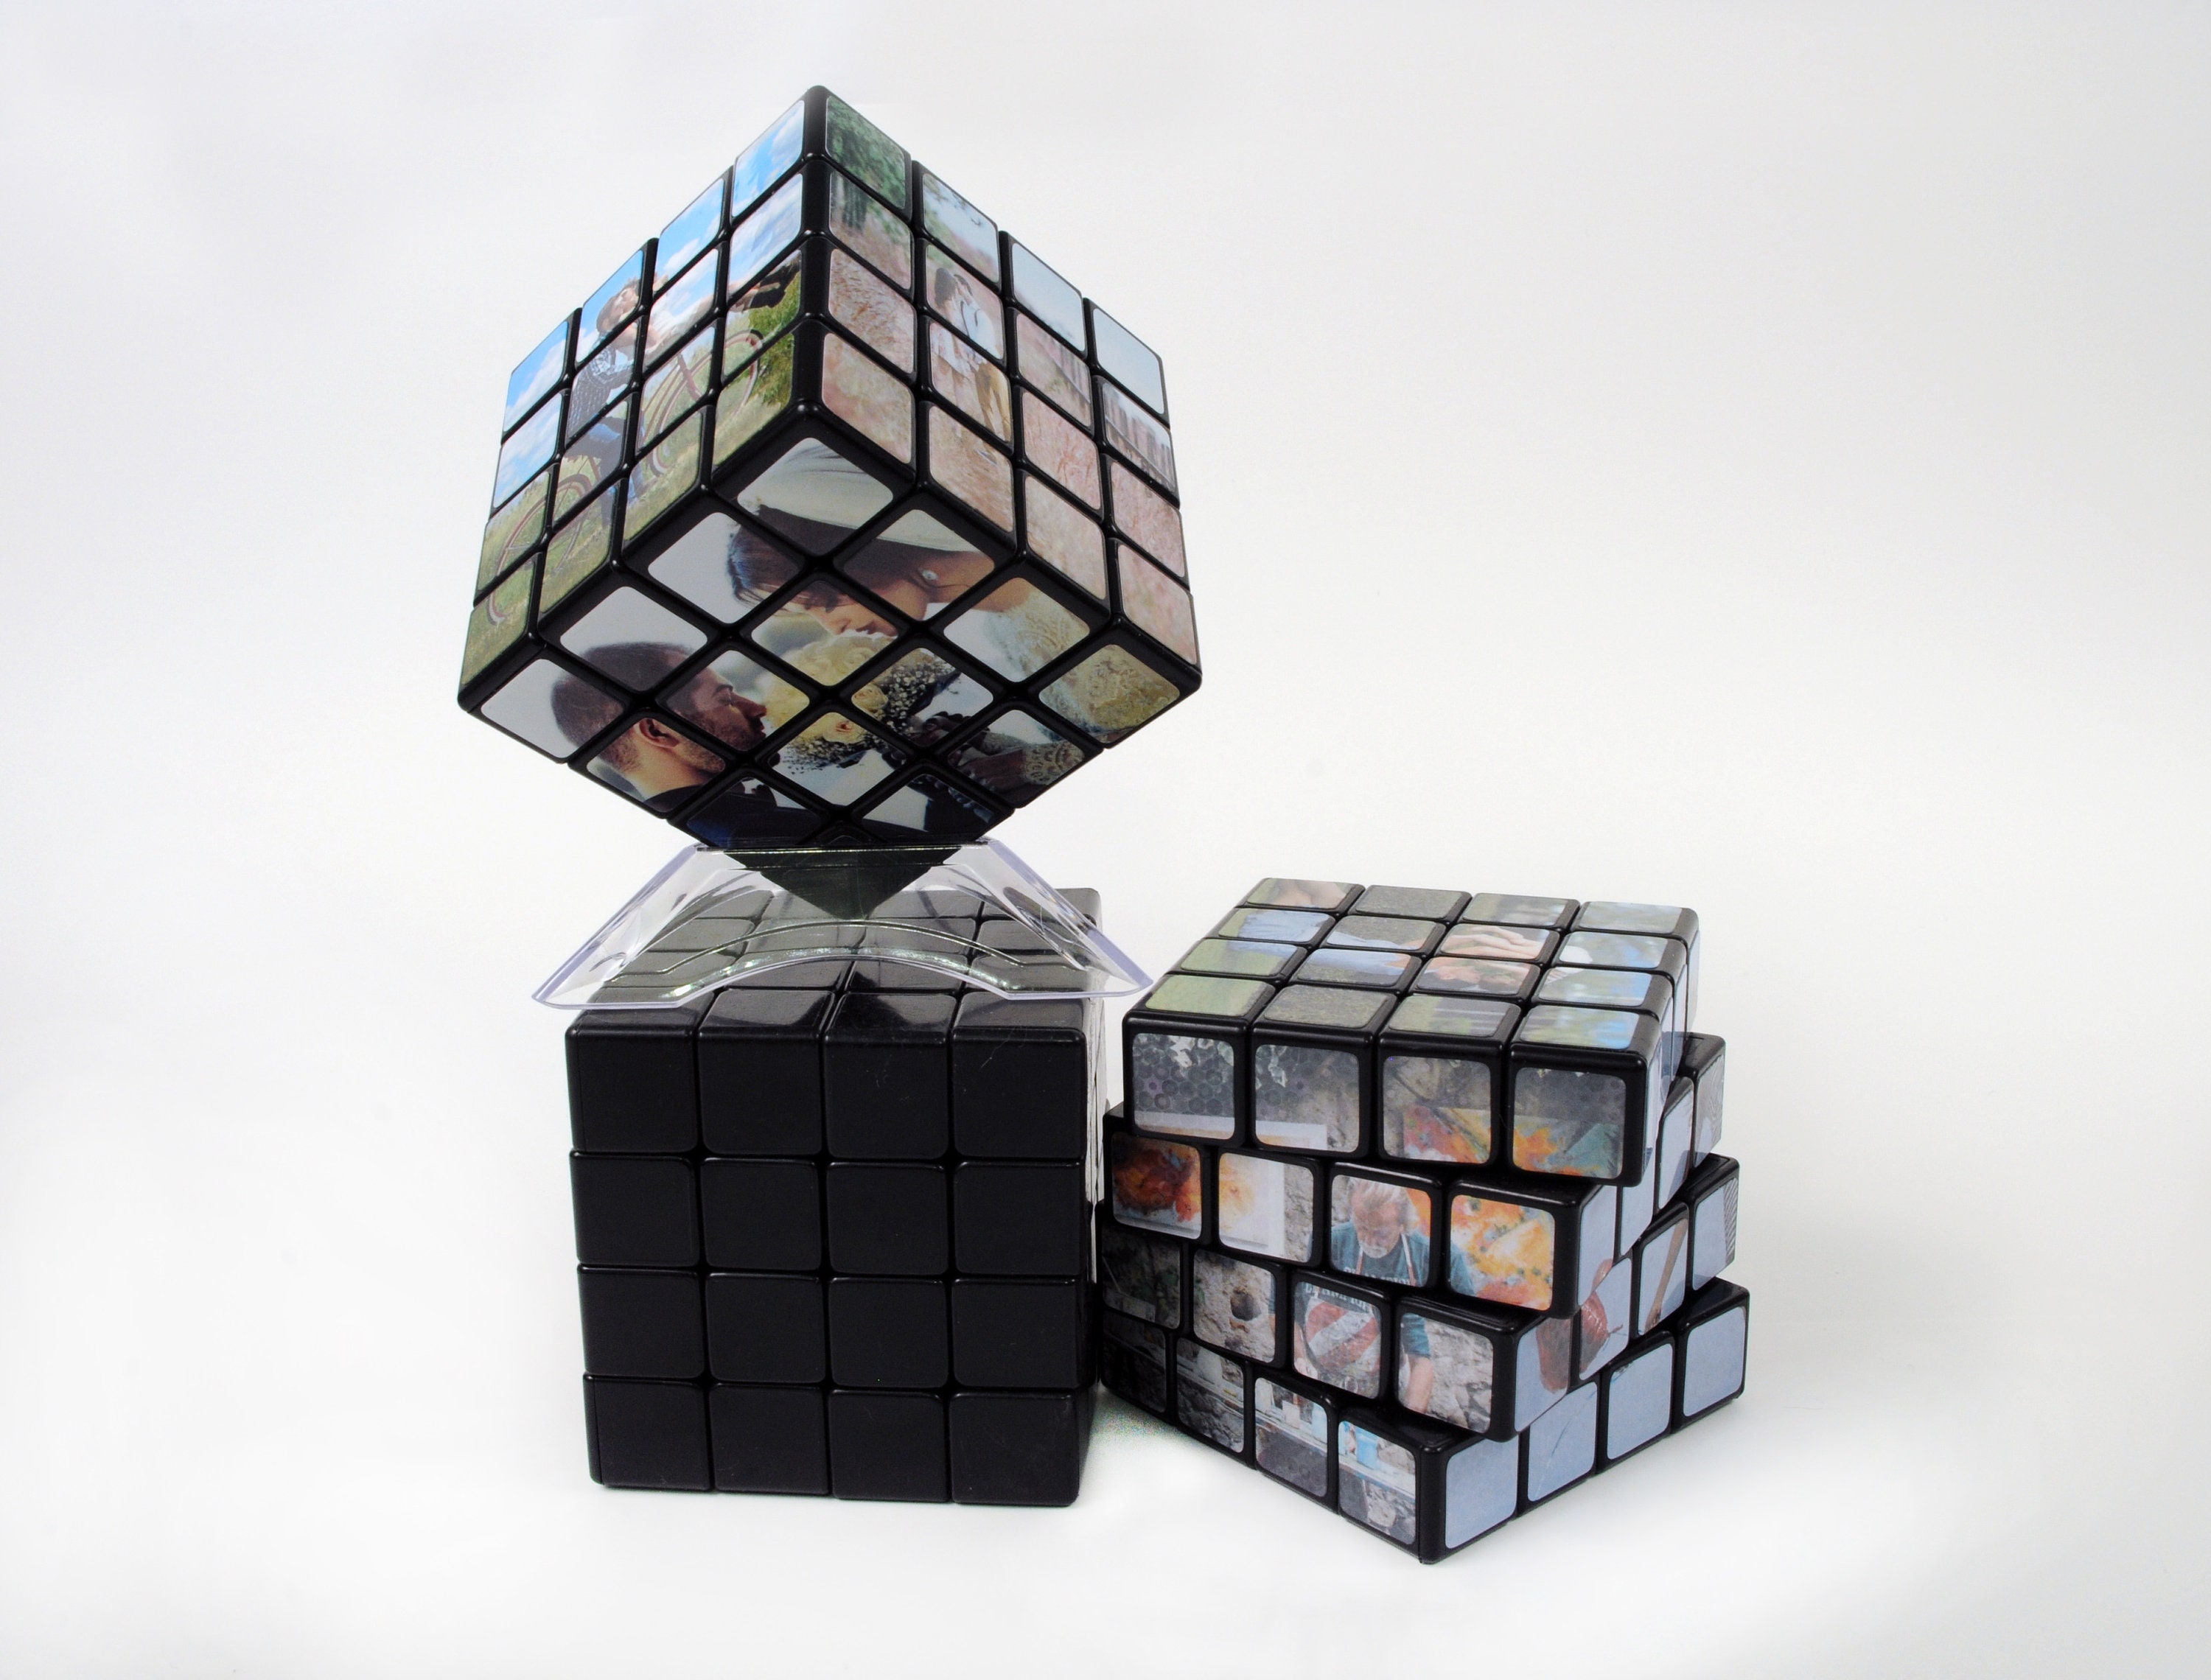 Rubik's® Cube 4x4 - Rubik's for Brand Communication